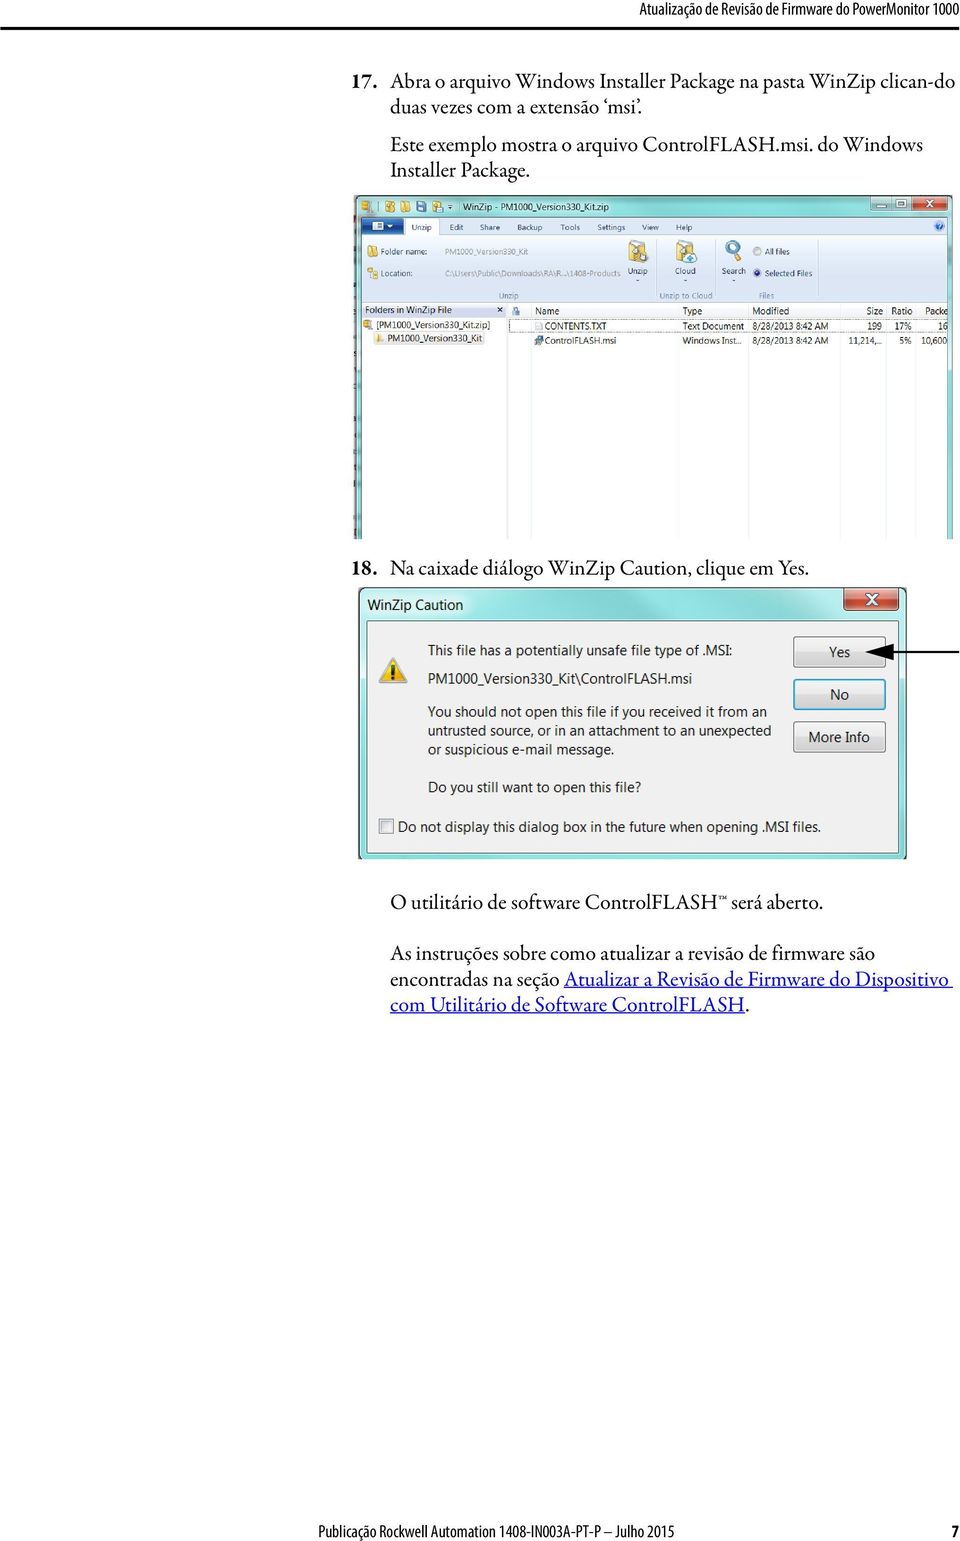 Na caixade diálogo WinZip Caution, clique em Yes. O utilitário de software ControlFLASH será aberto.